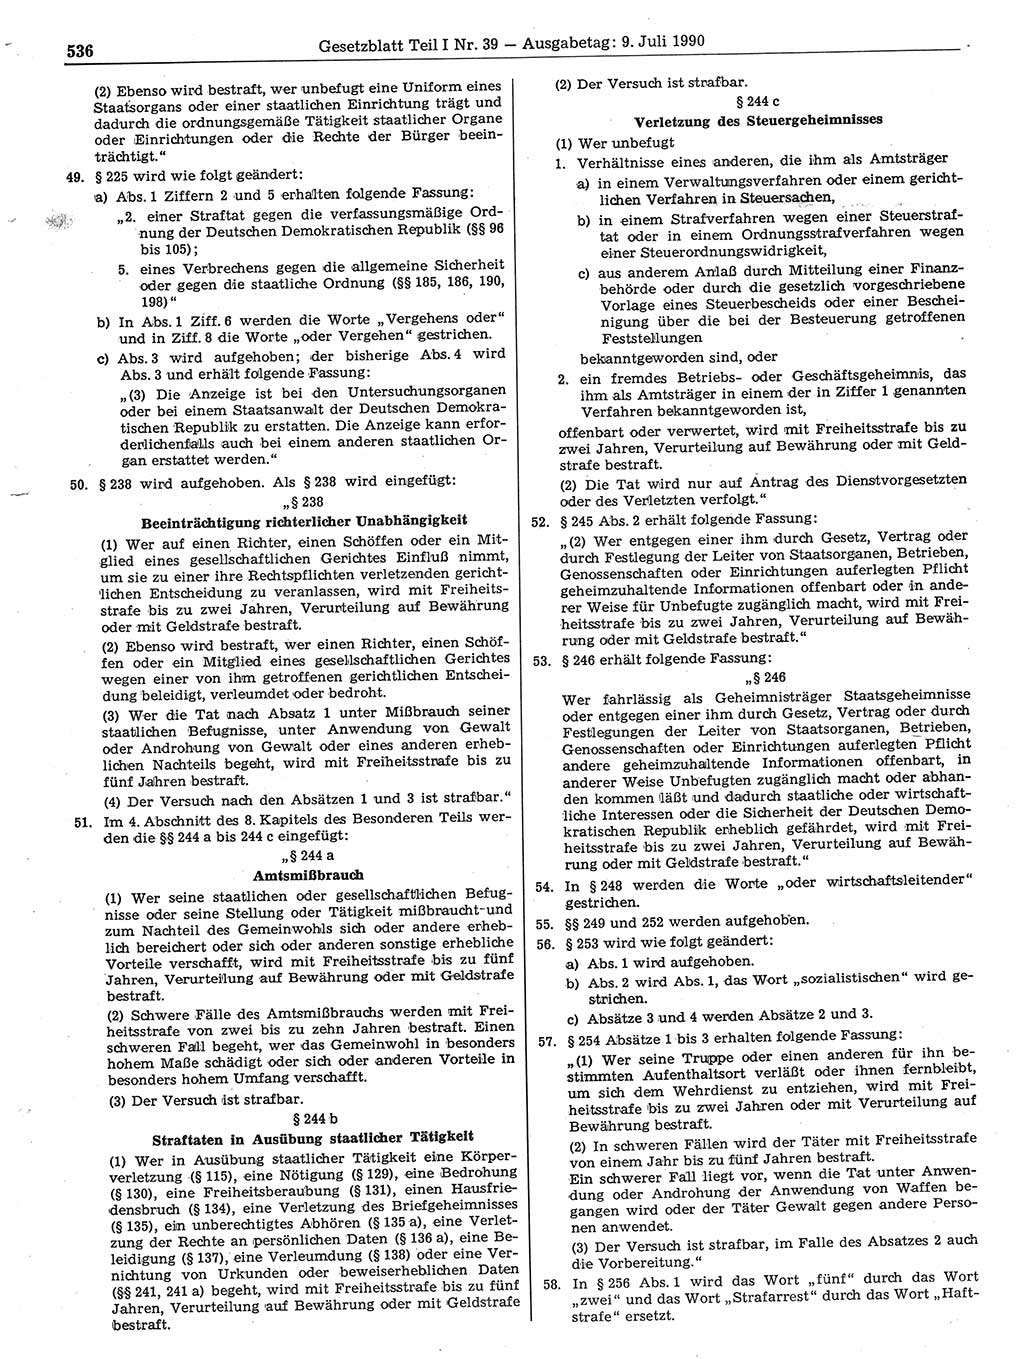 Gesetzblatt (GBl.) der Deutschen Demokratischen Republik (DDR) Teil Ⅰ 1990, Seite 536 (GBl. DDR Ⅰ 1990, S. 536)